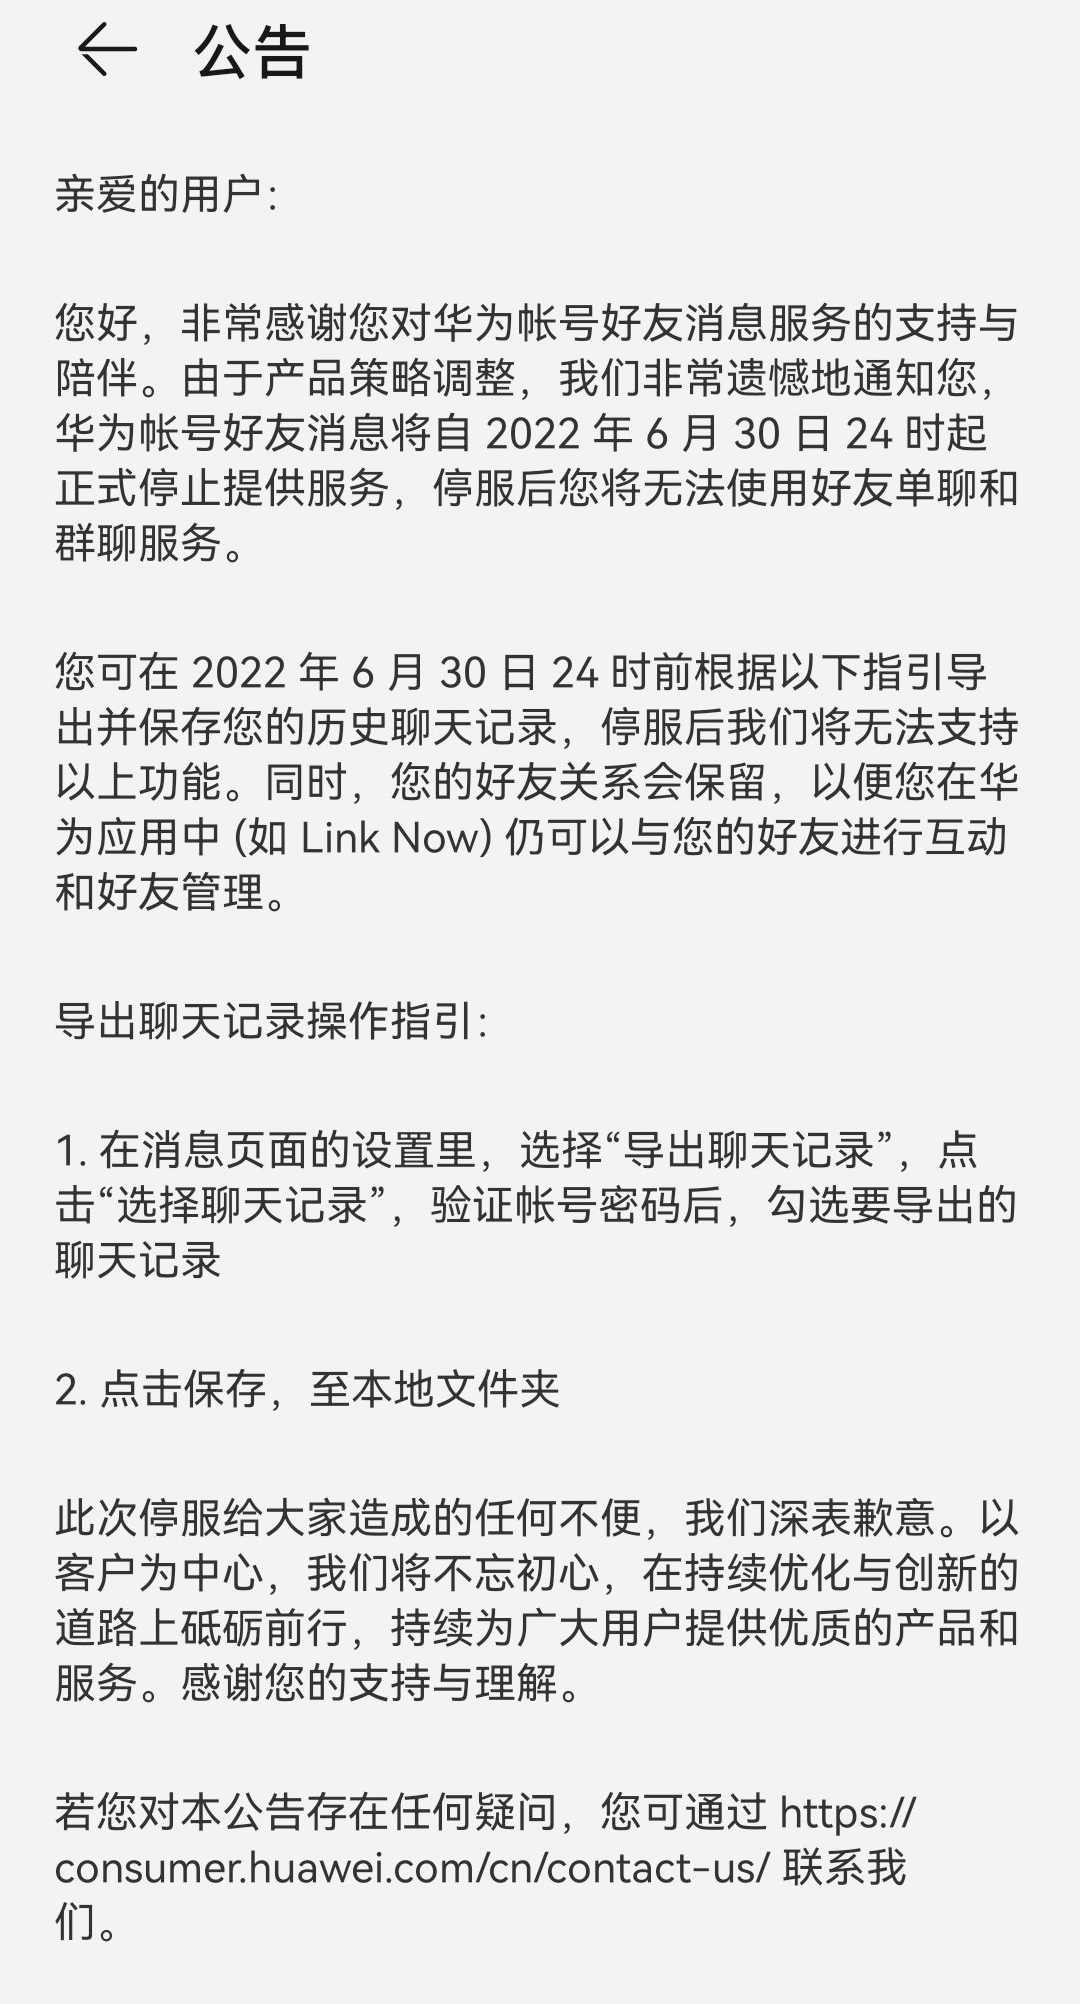 华为账号好友消息将于 6 月 30 日停止服务